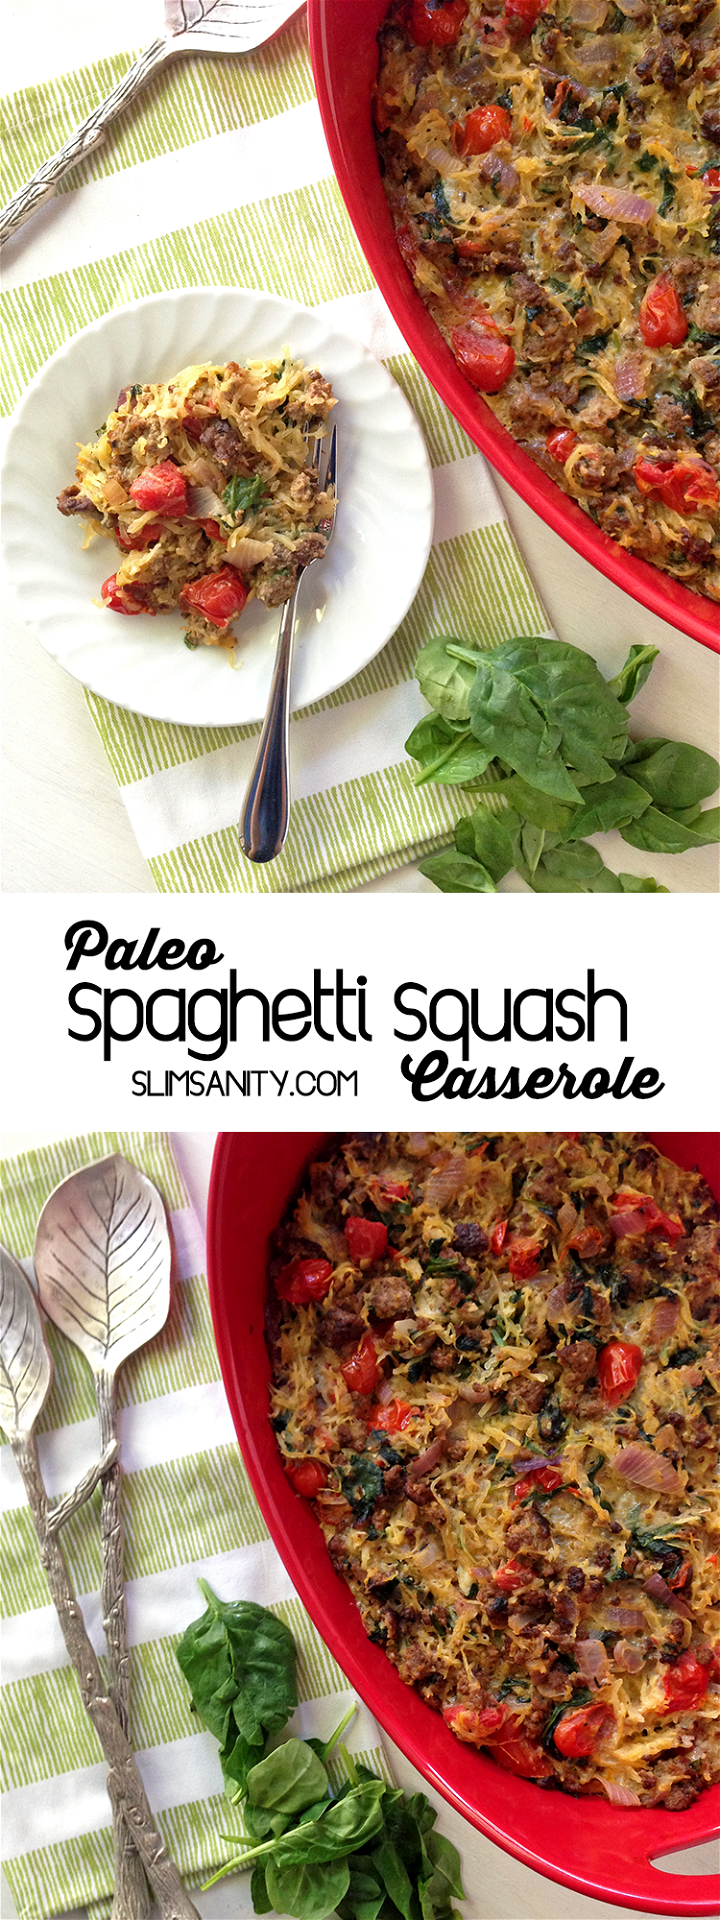 Paleo Spaghetti Squash Casserole Pinterest